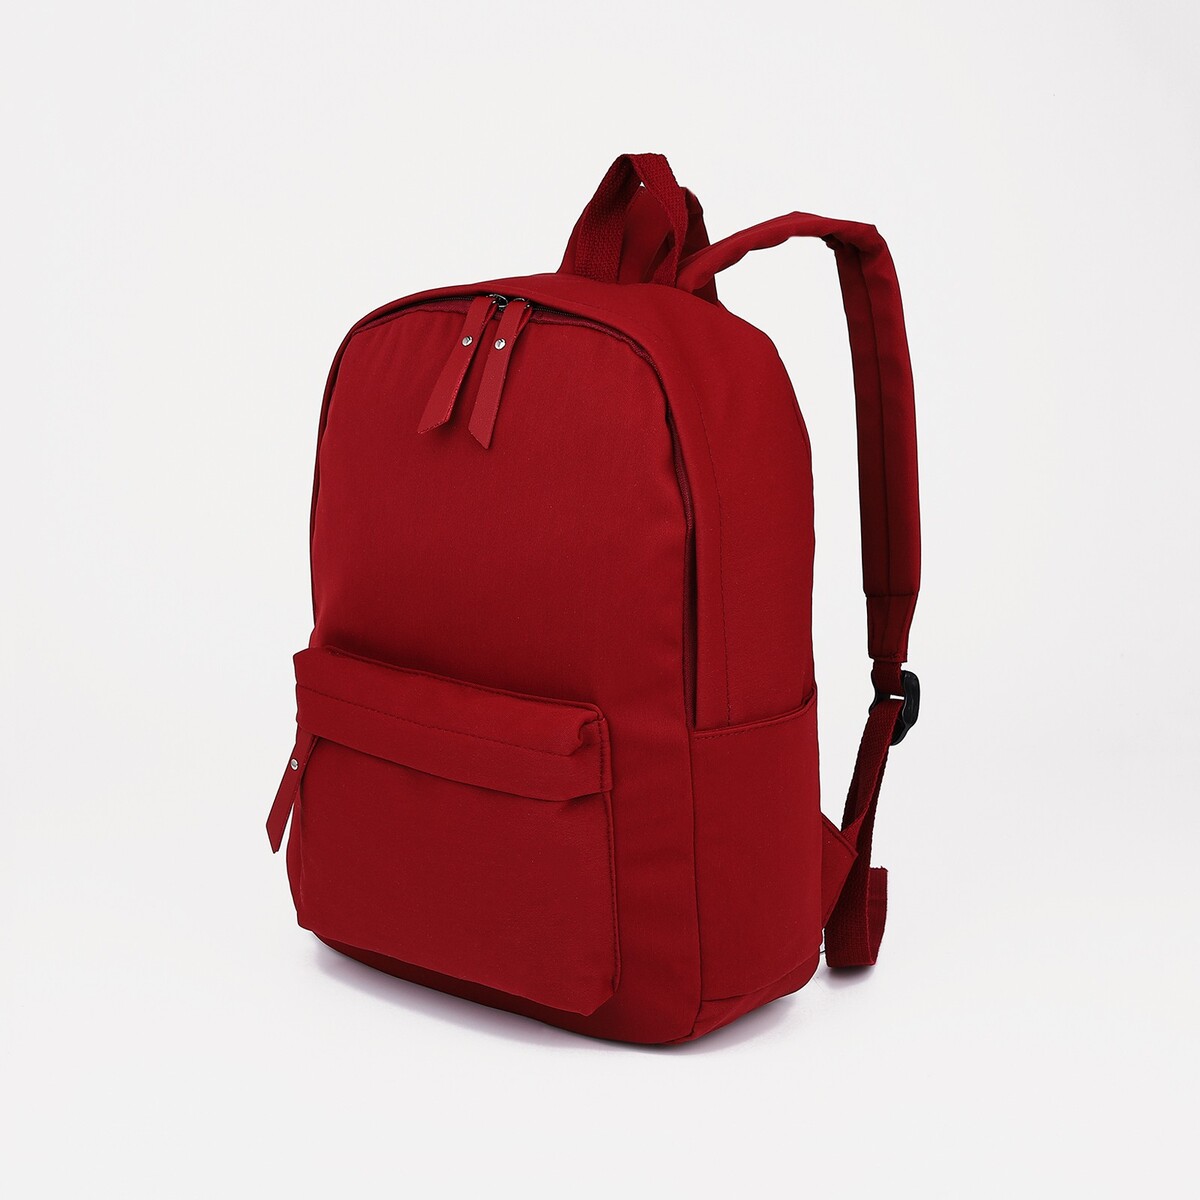 Рюкзак молодежный из текстиля, 4 кармана, цвет бордовый рюкзак wenger urban contemporary 605024 14 бордовый 14 л